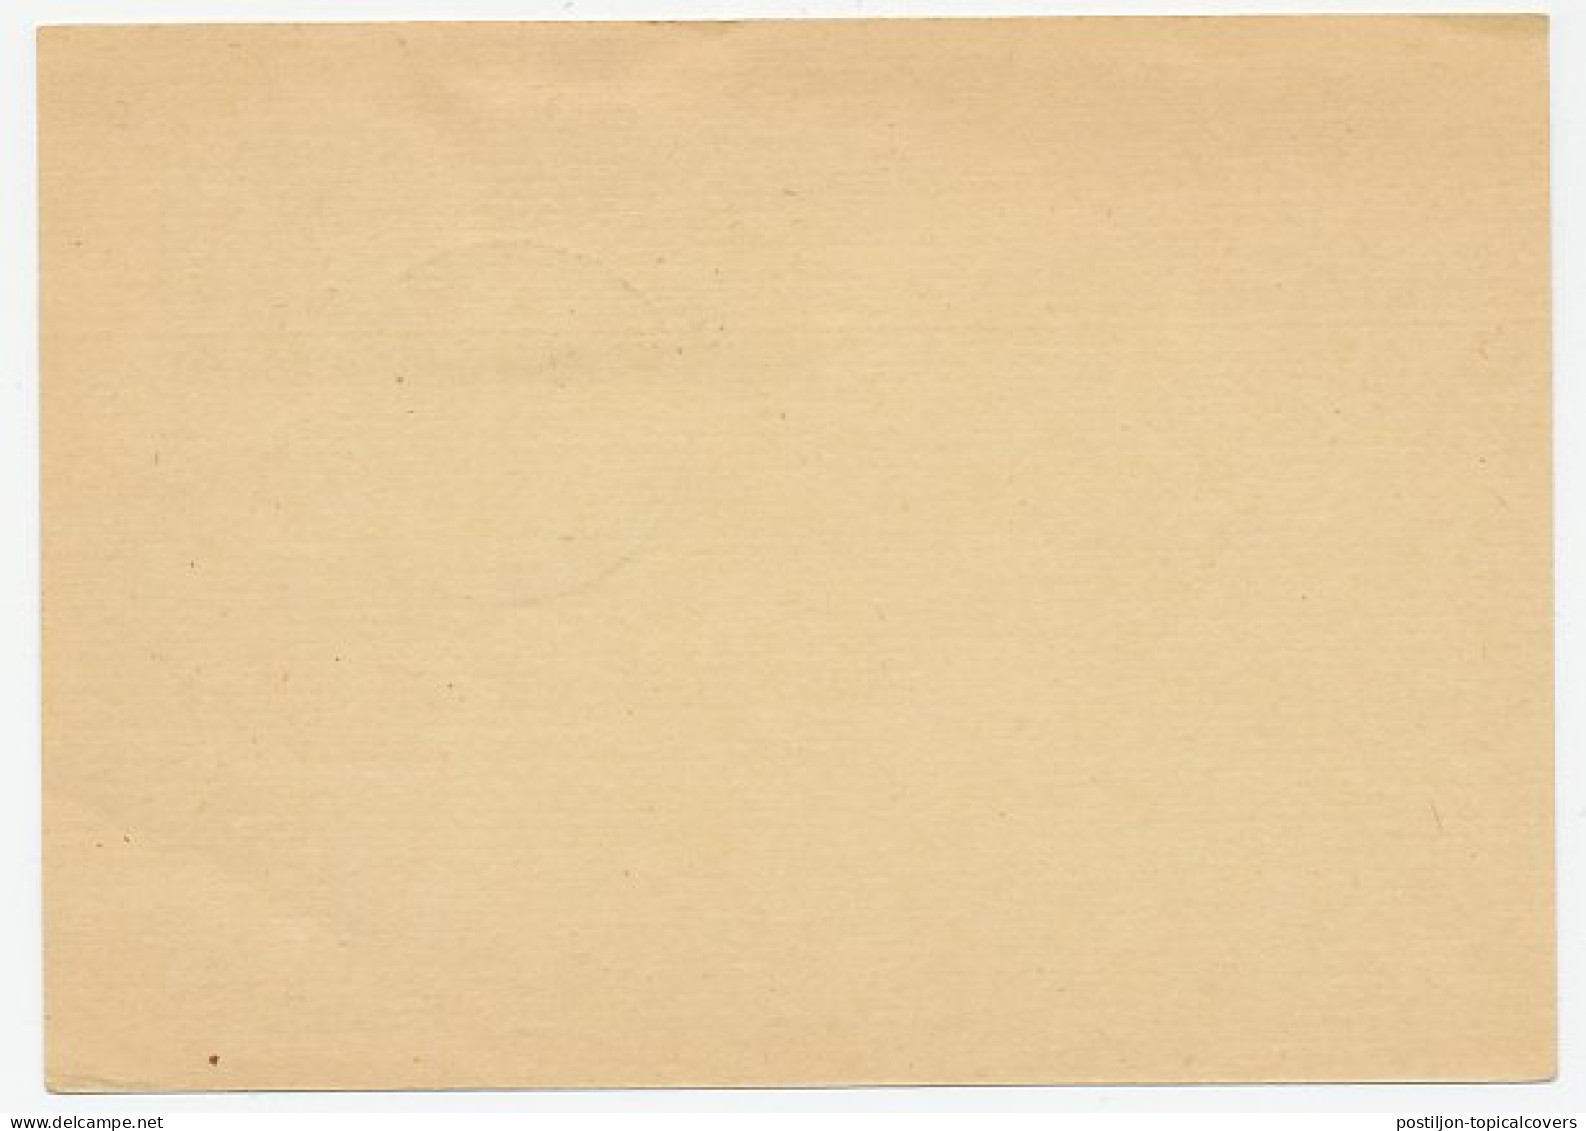 Card / Postmark Germany 1956 Lagerpost Brexbachtal - Altri & Non Classificati